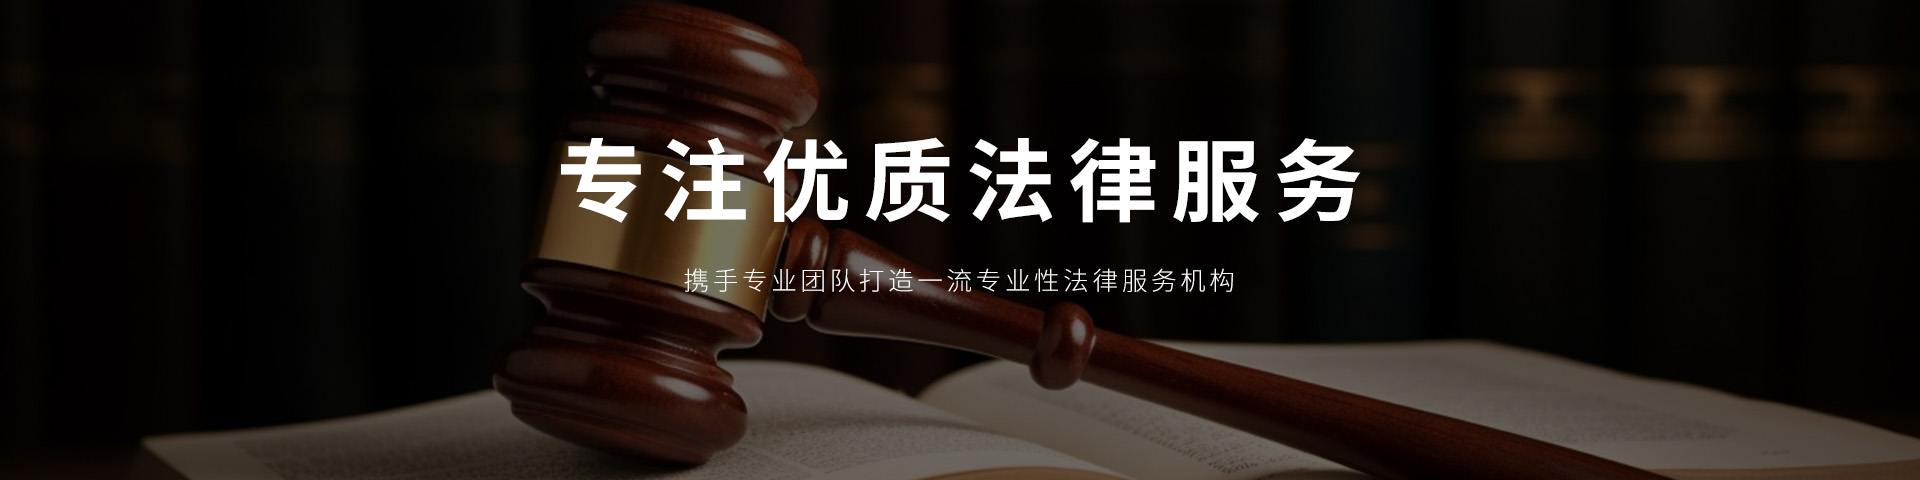 济南律师事务所是专业的法律咨询服务平台，丰富的律师顾问经验，资深高效的律师团队，帮您一对一解答法律